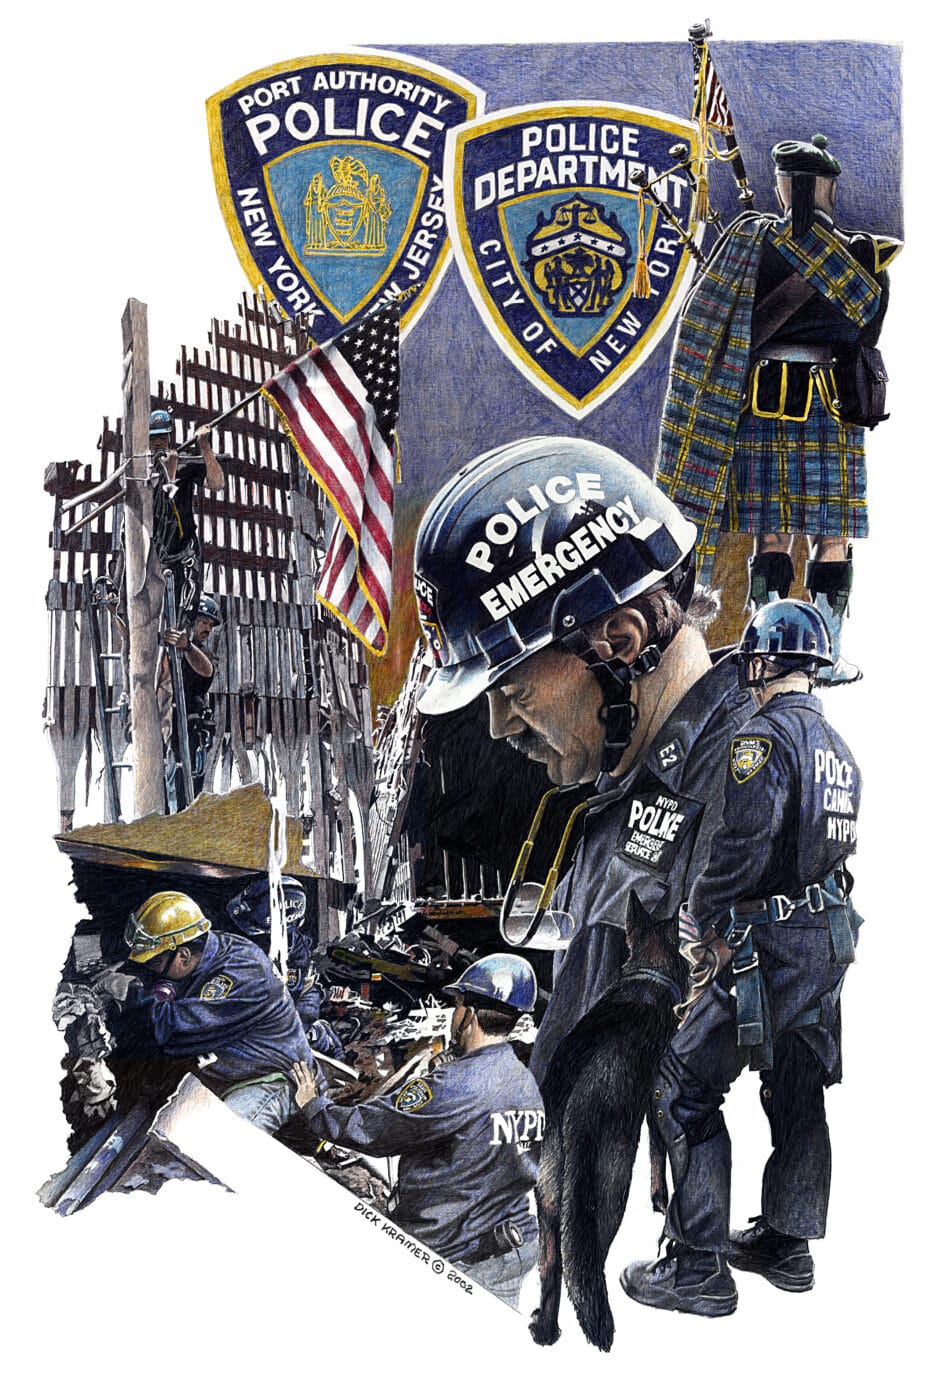 September 11 art by Dick Kramer